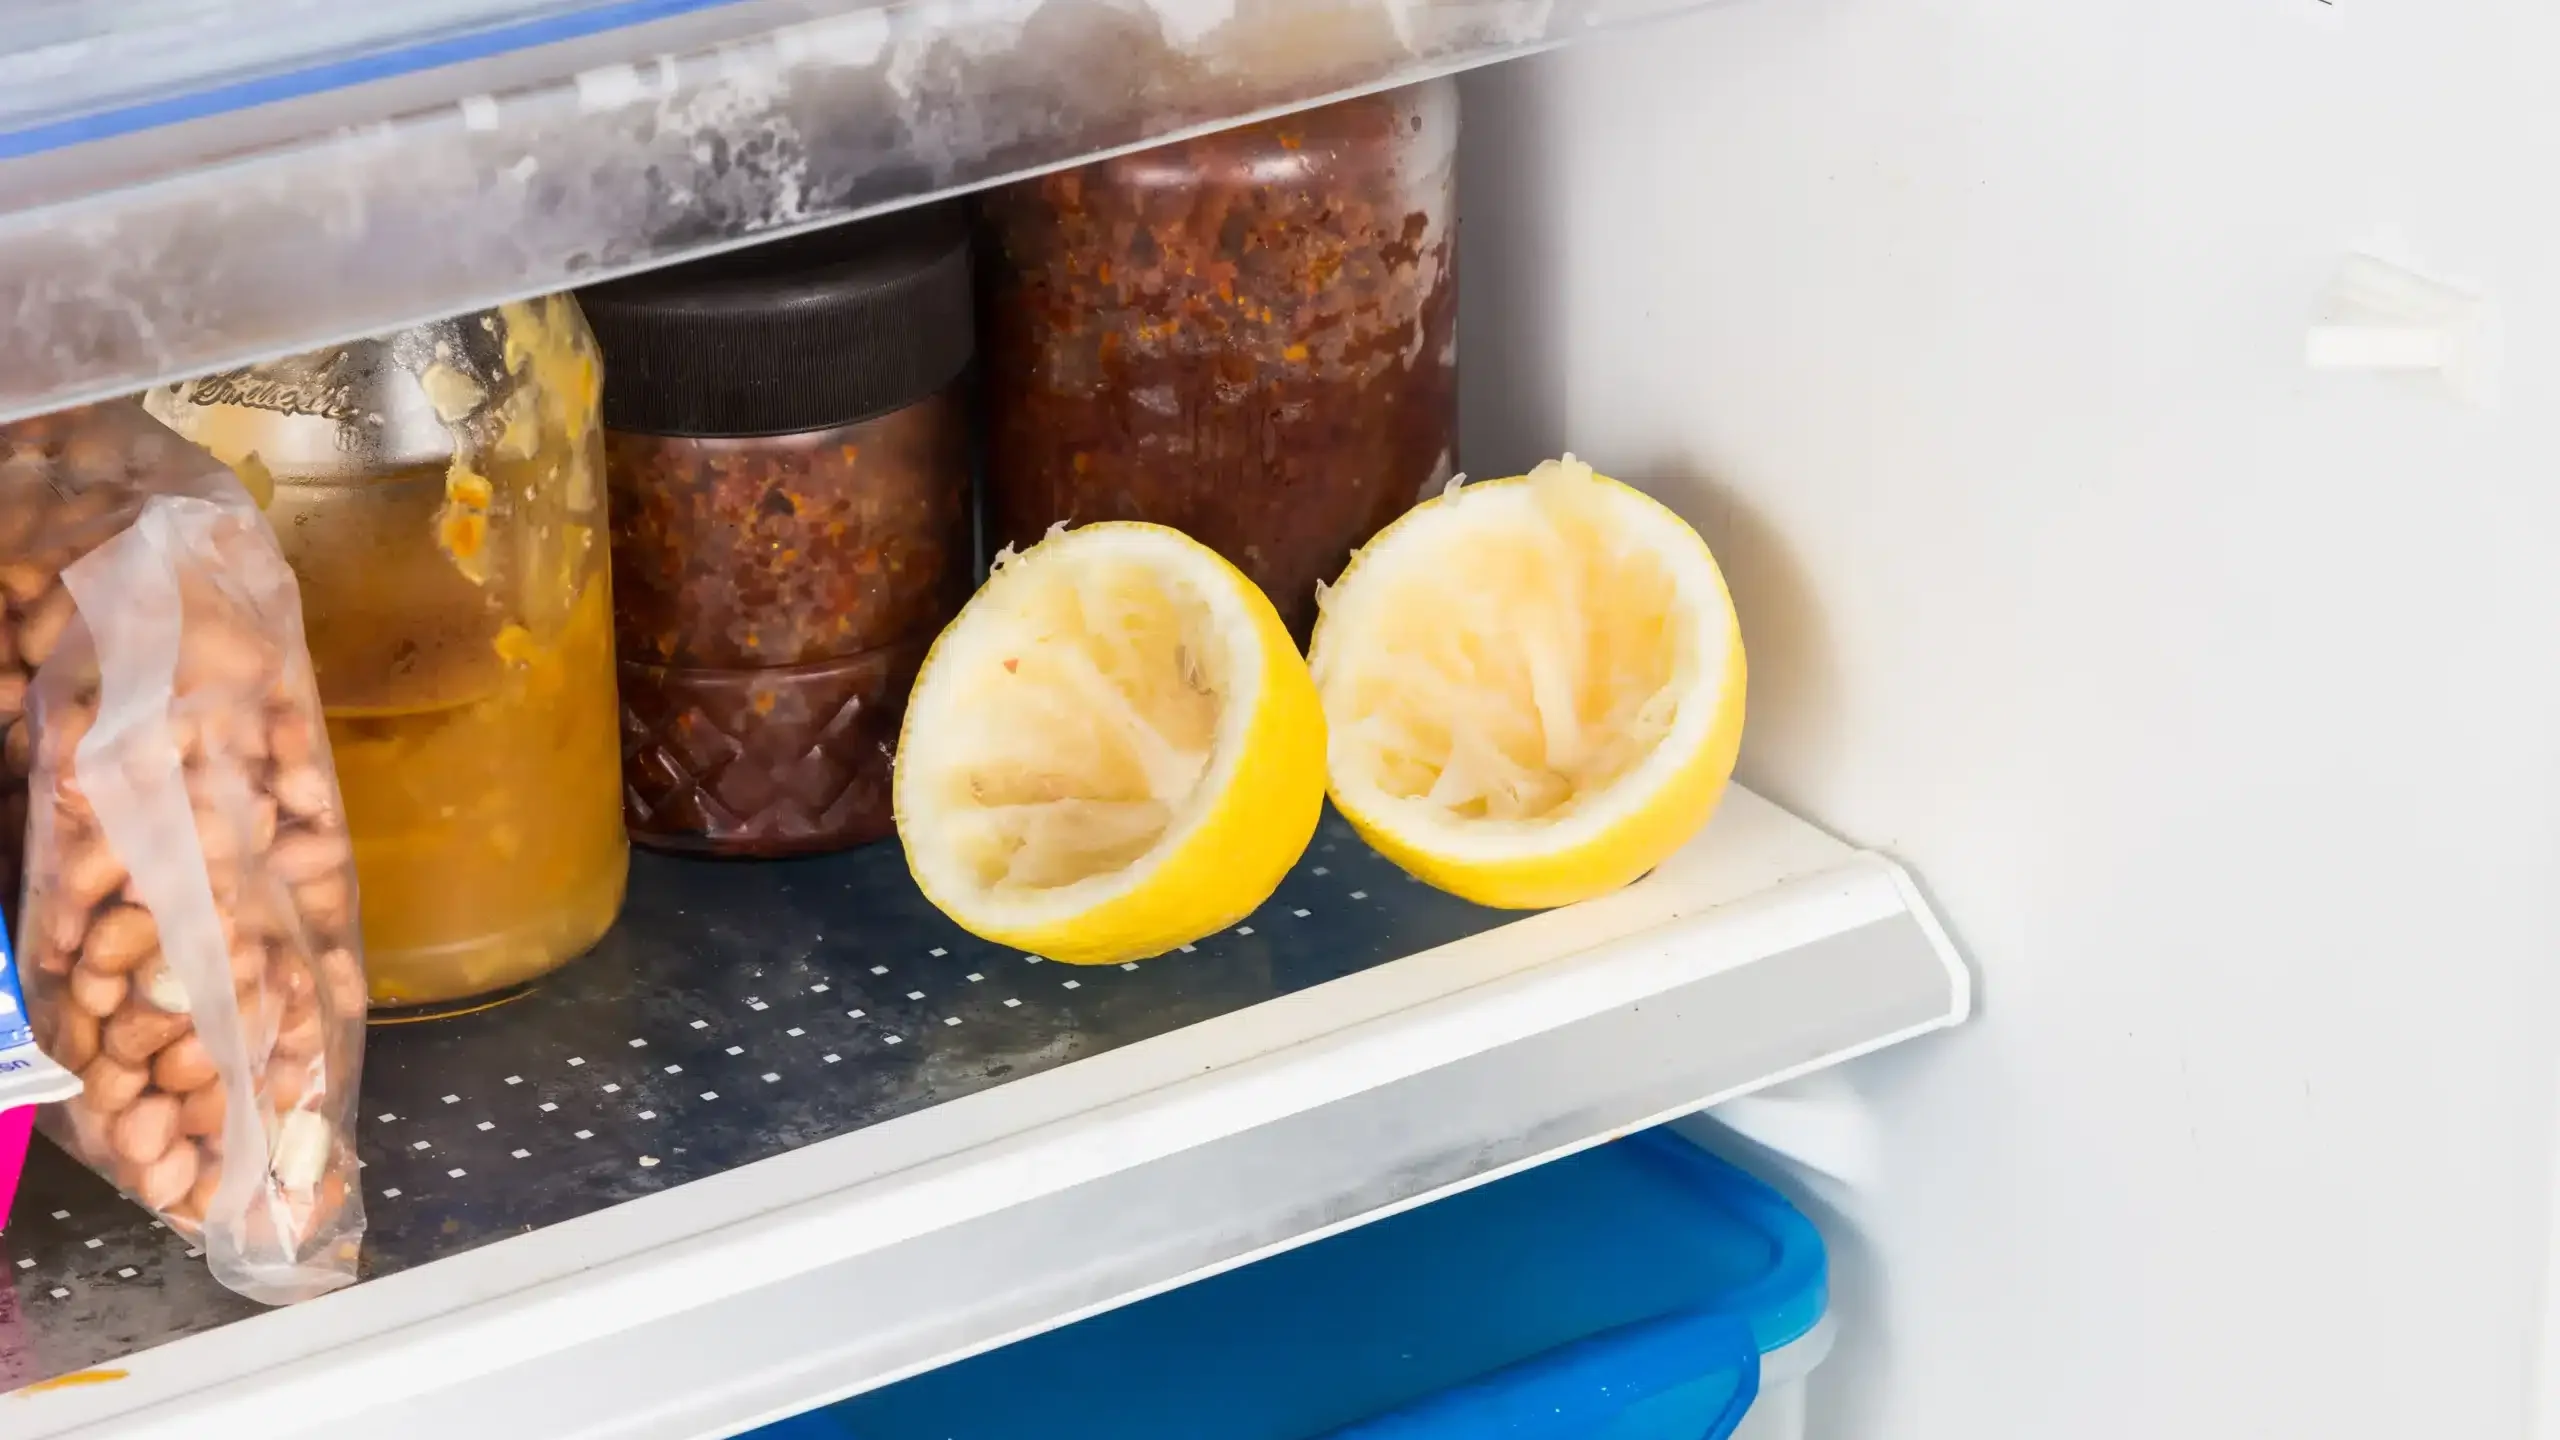 Połówki wyciśniętej cytryny ułożone na półce chłodziarki - domowy sposób na zapachy w lodówce